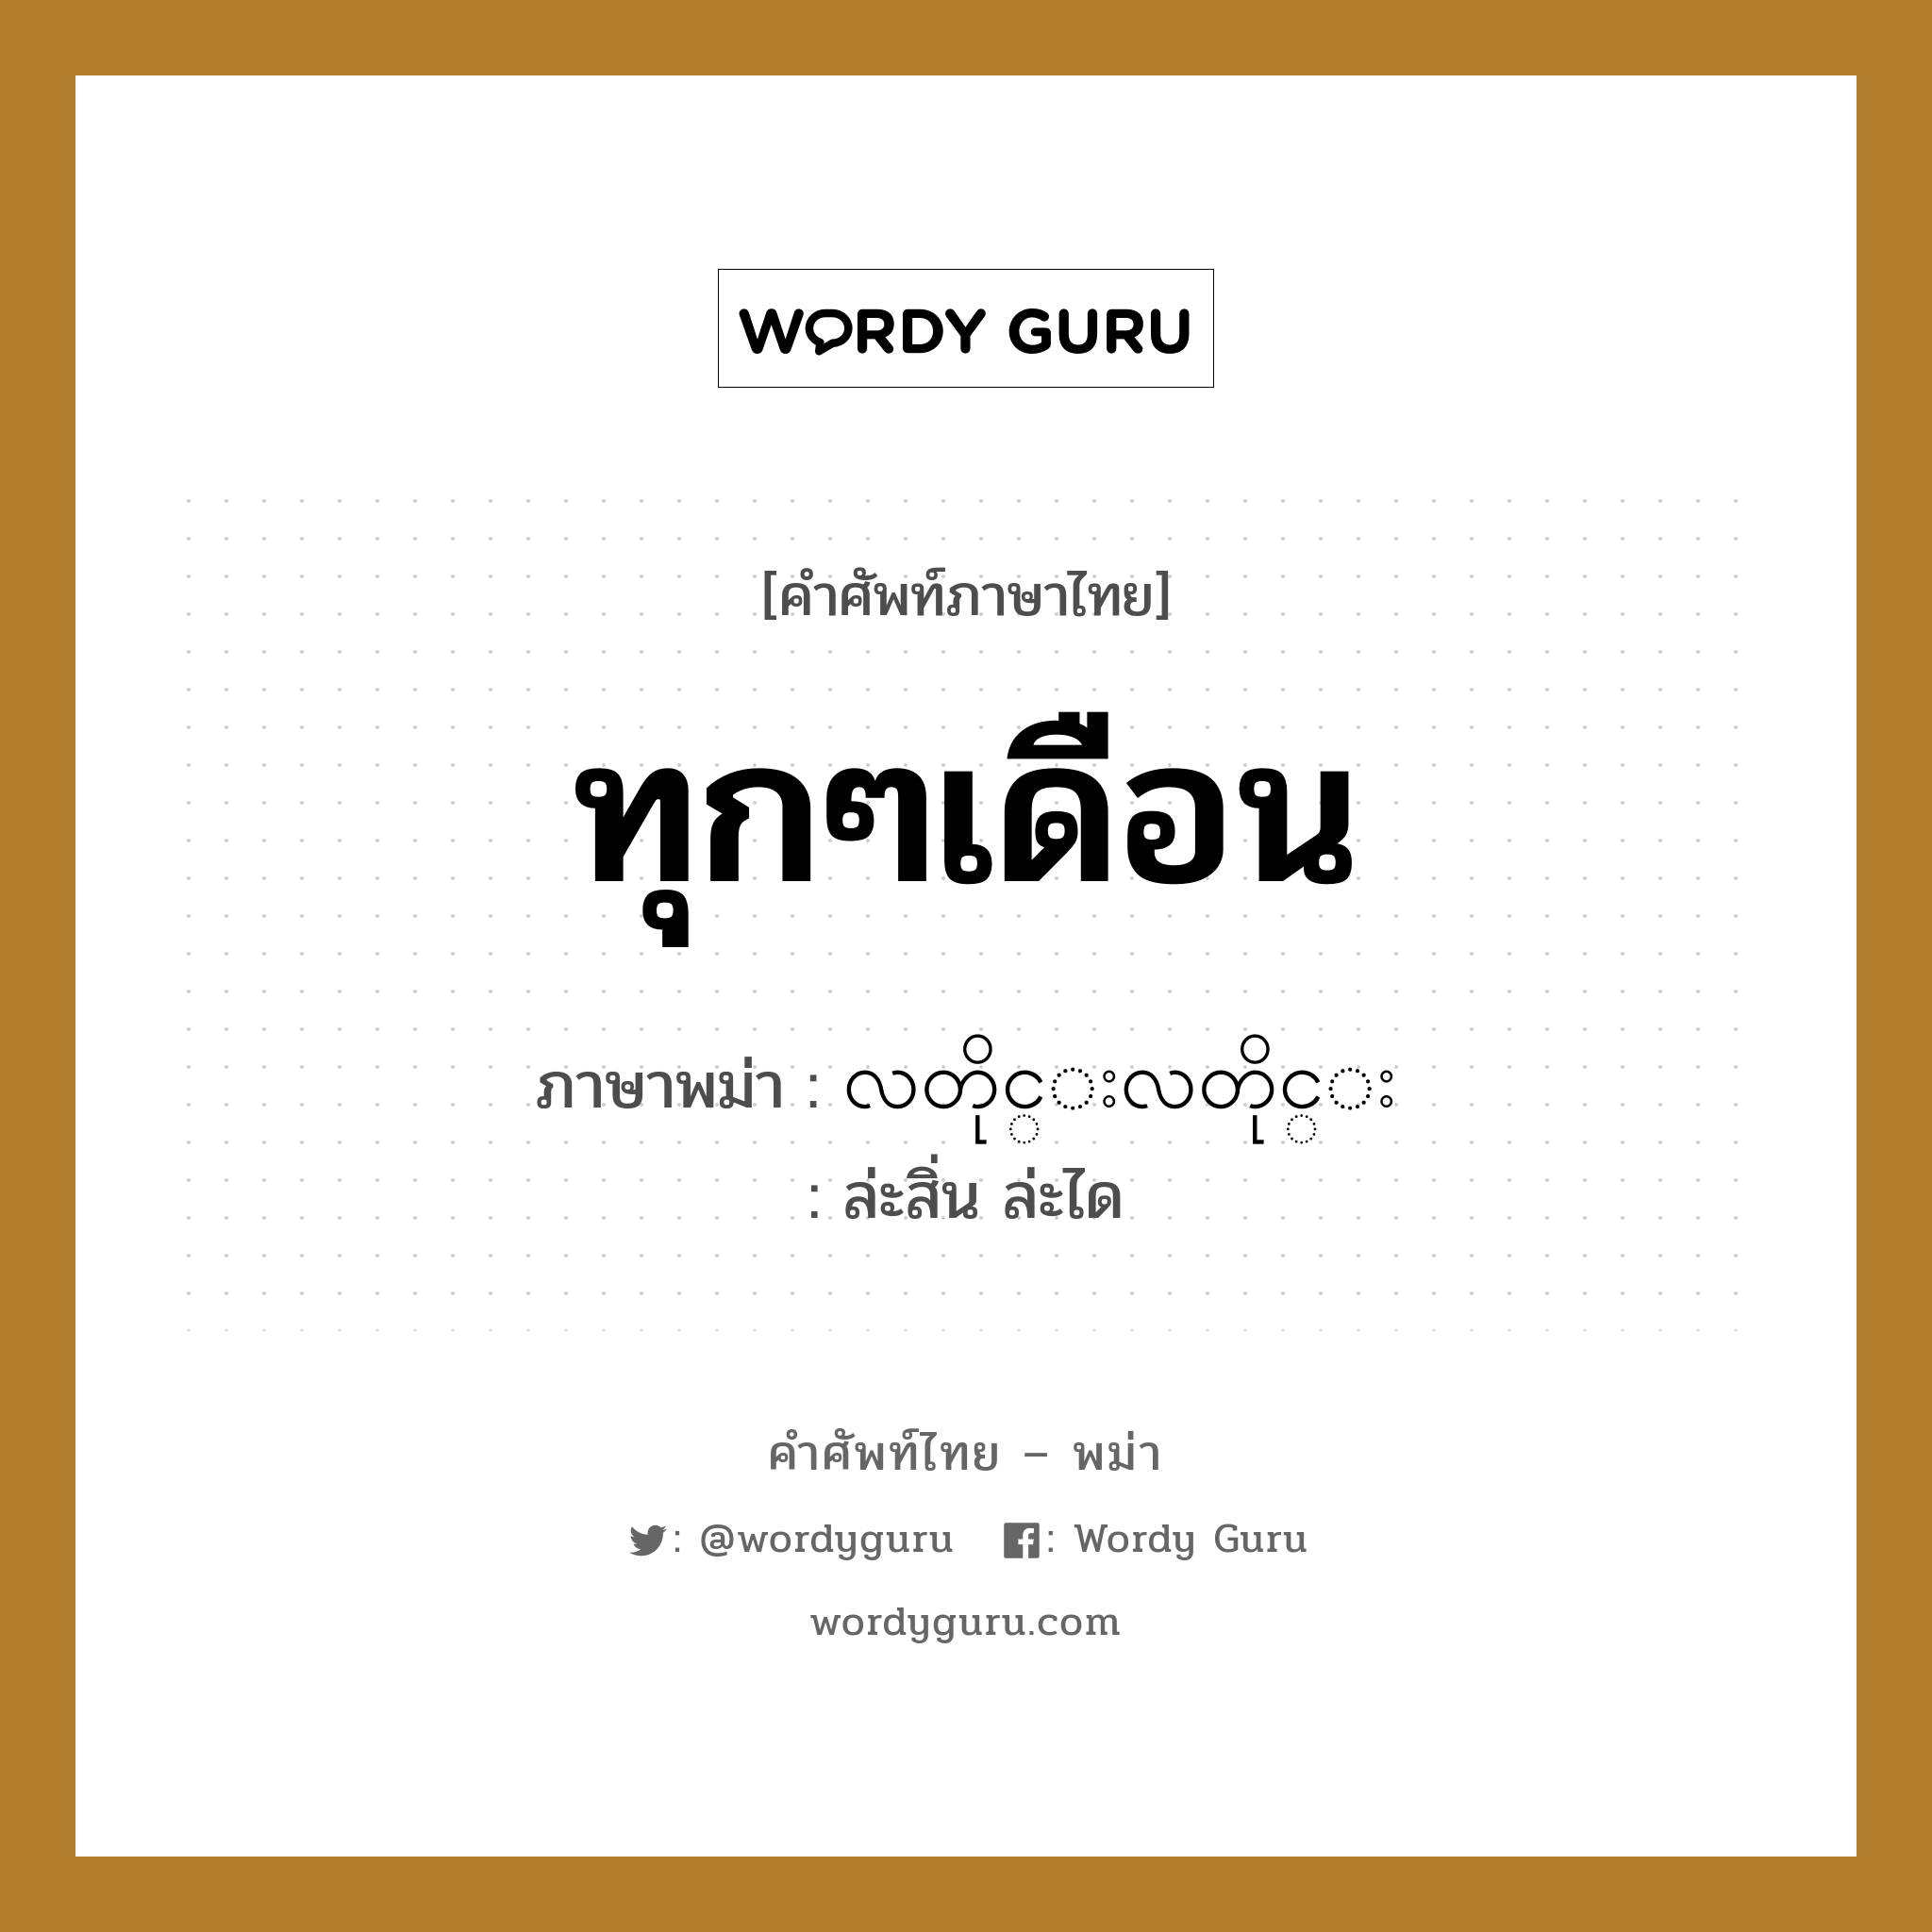 ทุกๆเดือน ภาษาพม่าคืออะไร, คำศัพท์ภาษาไทย - พม่า ทุกๆเดือน ภาษาพม่า လတိုင္းလတိုင္း หมวด หมวดวัน เดือน ปี ล่ะสิ่น ล่ะได หมวด หมวดวัน เดือน ปี